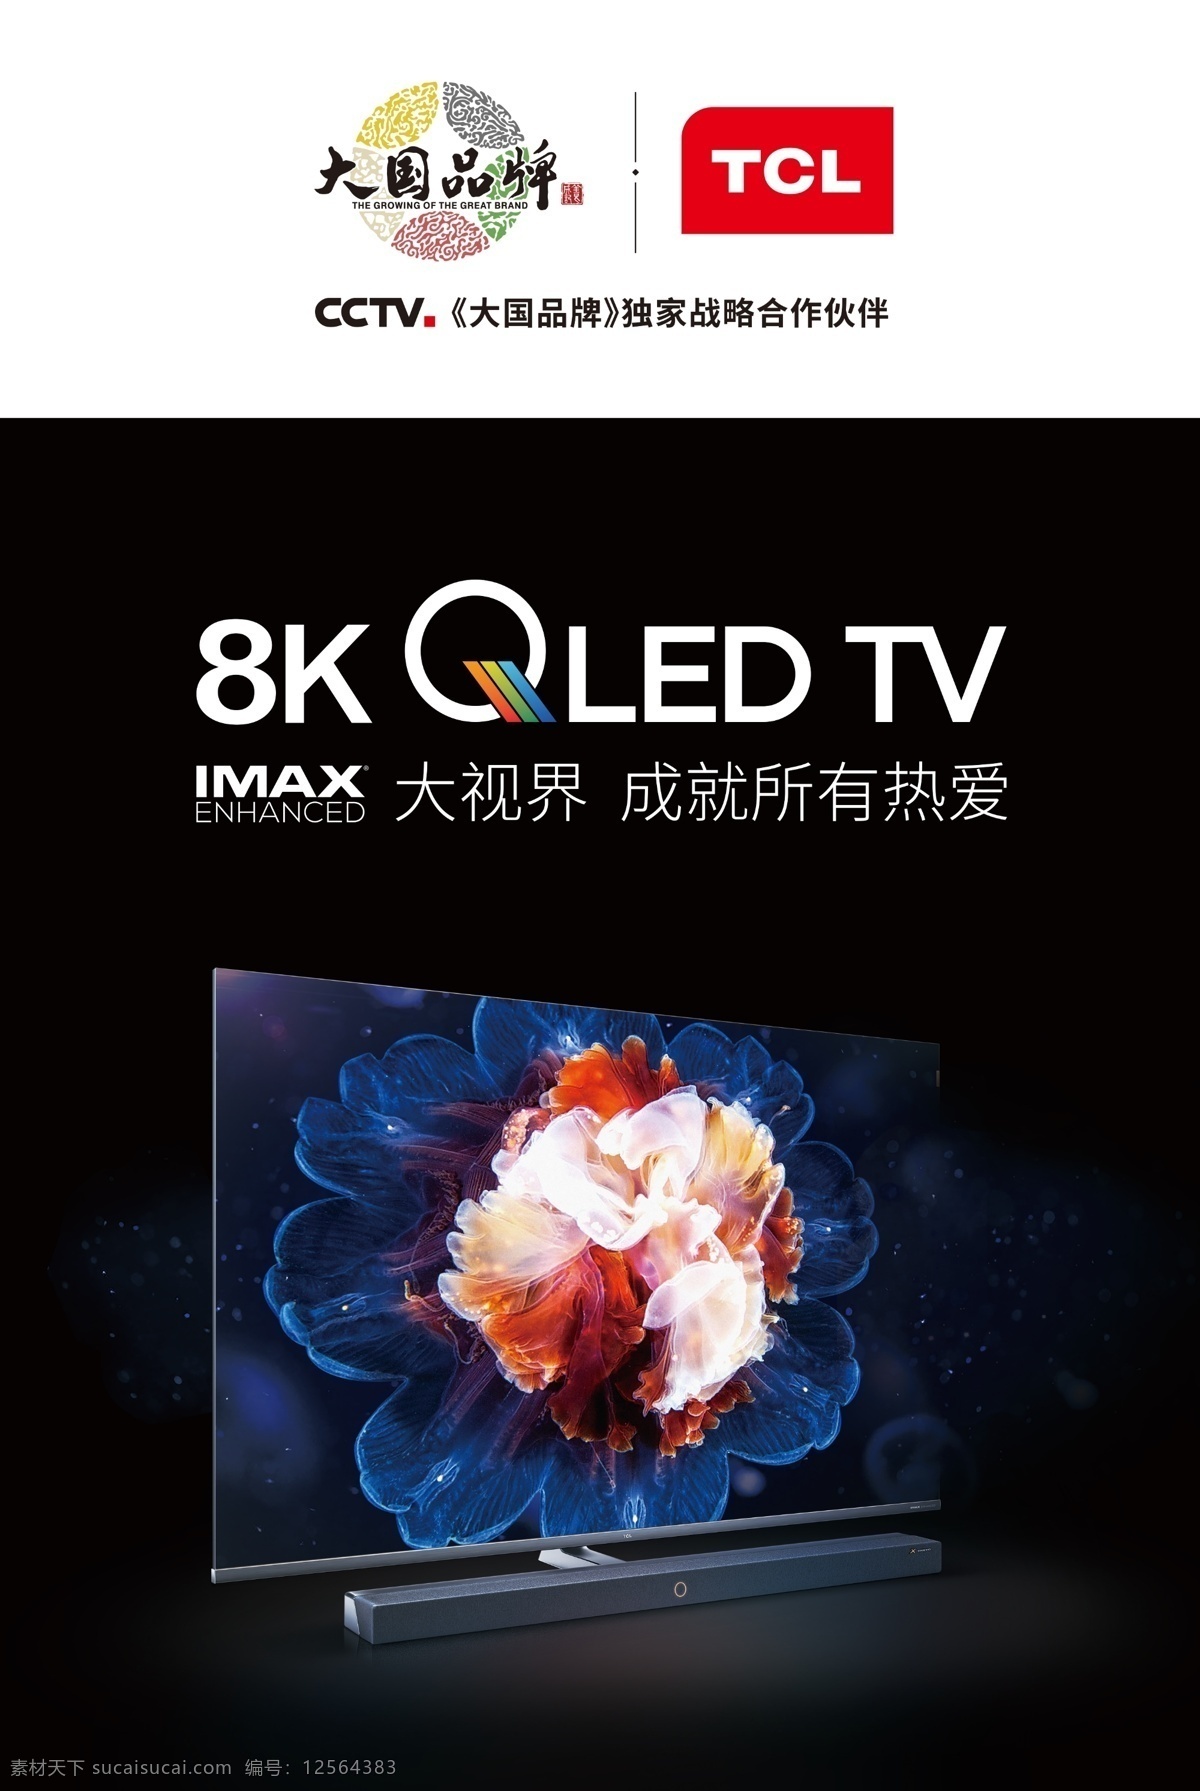 tcl 液晶电视 大国品牌 8k qled tv 2019 画面 分层